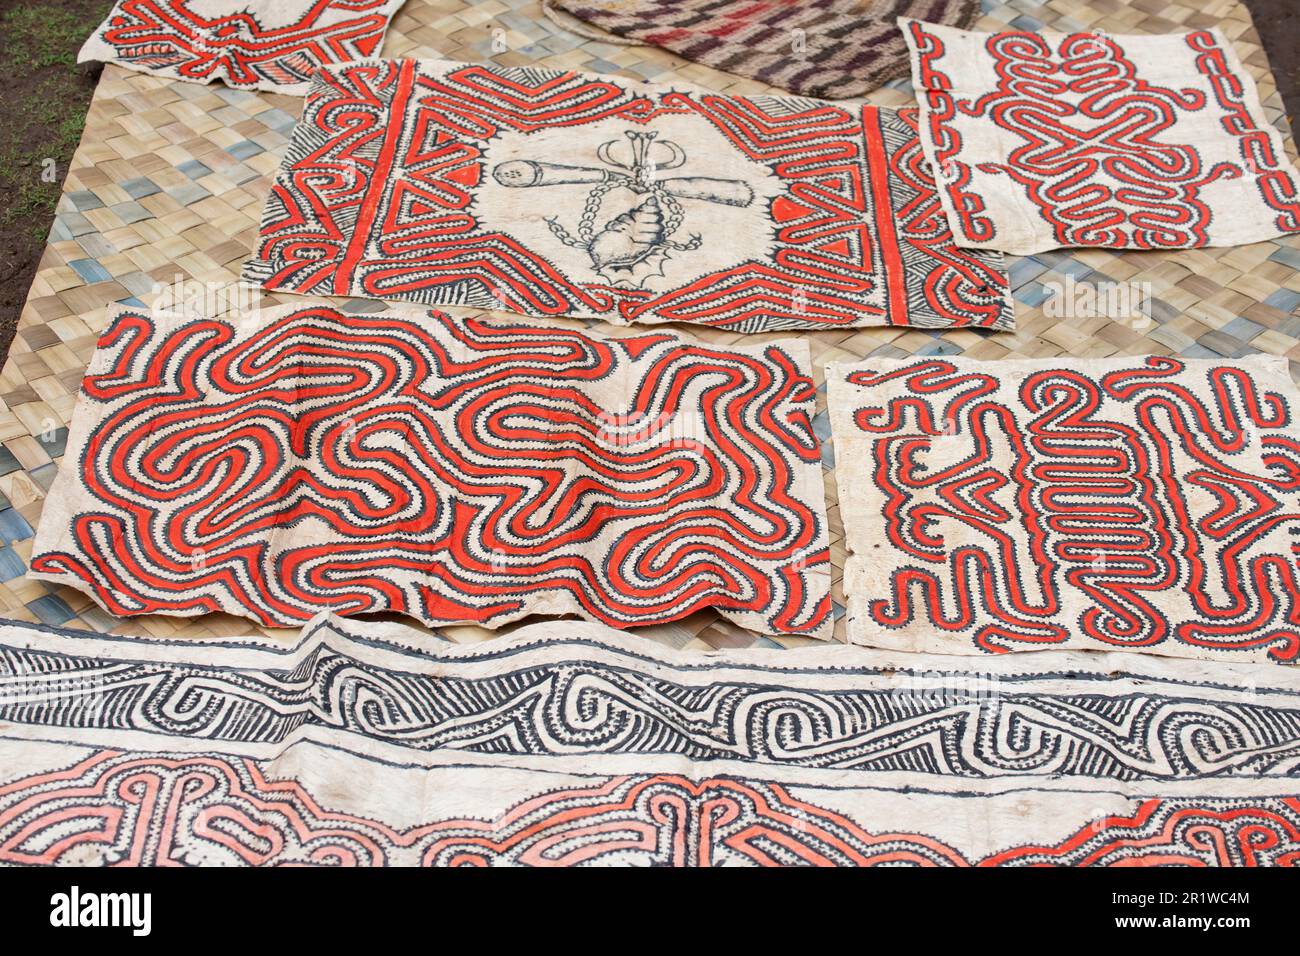 Papouasie-Nouvelle-Guinée, province d'Oro, île de Tufi, village de Baga. Tissu de tapa traditionnel. Banque D'Images